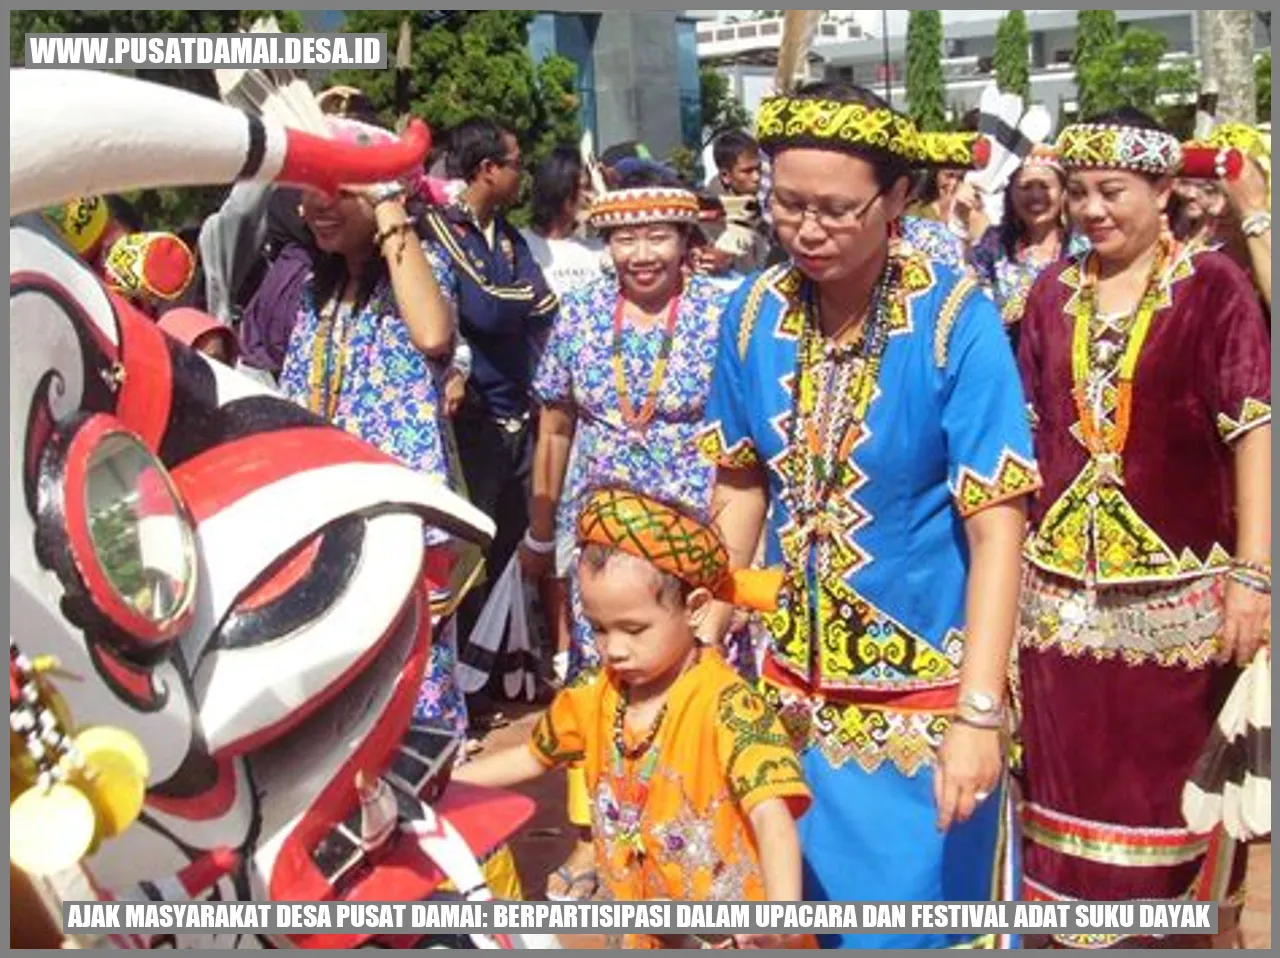 Ajak Masyarakat Desa Pusat Damai: Berpartisipasi dalam Upacara dan Festival Adat Suku Dayak